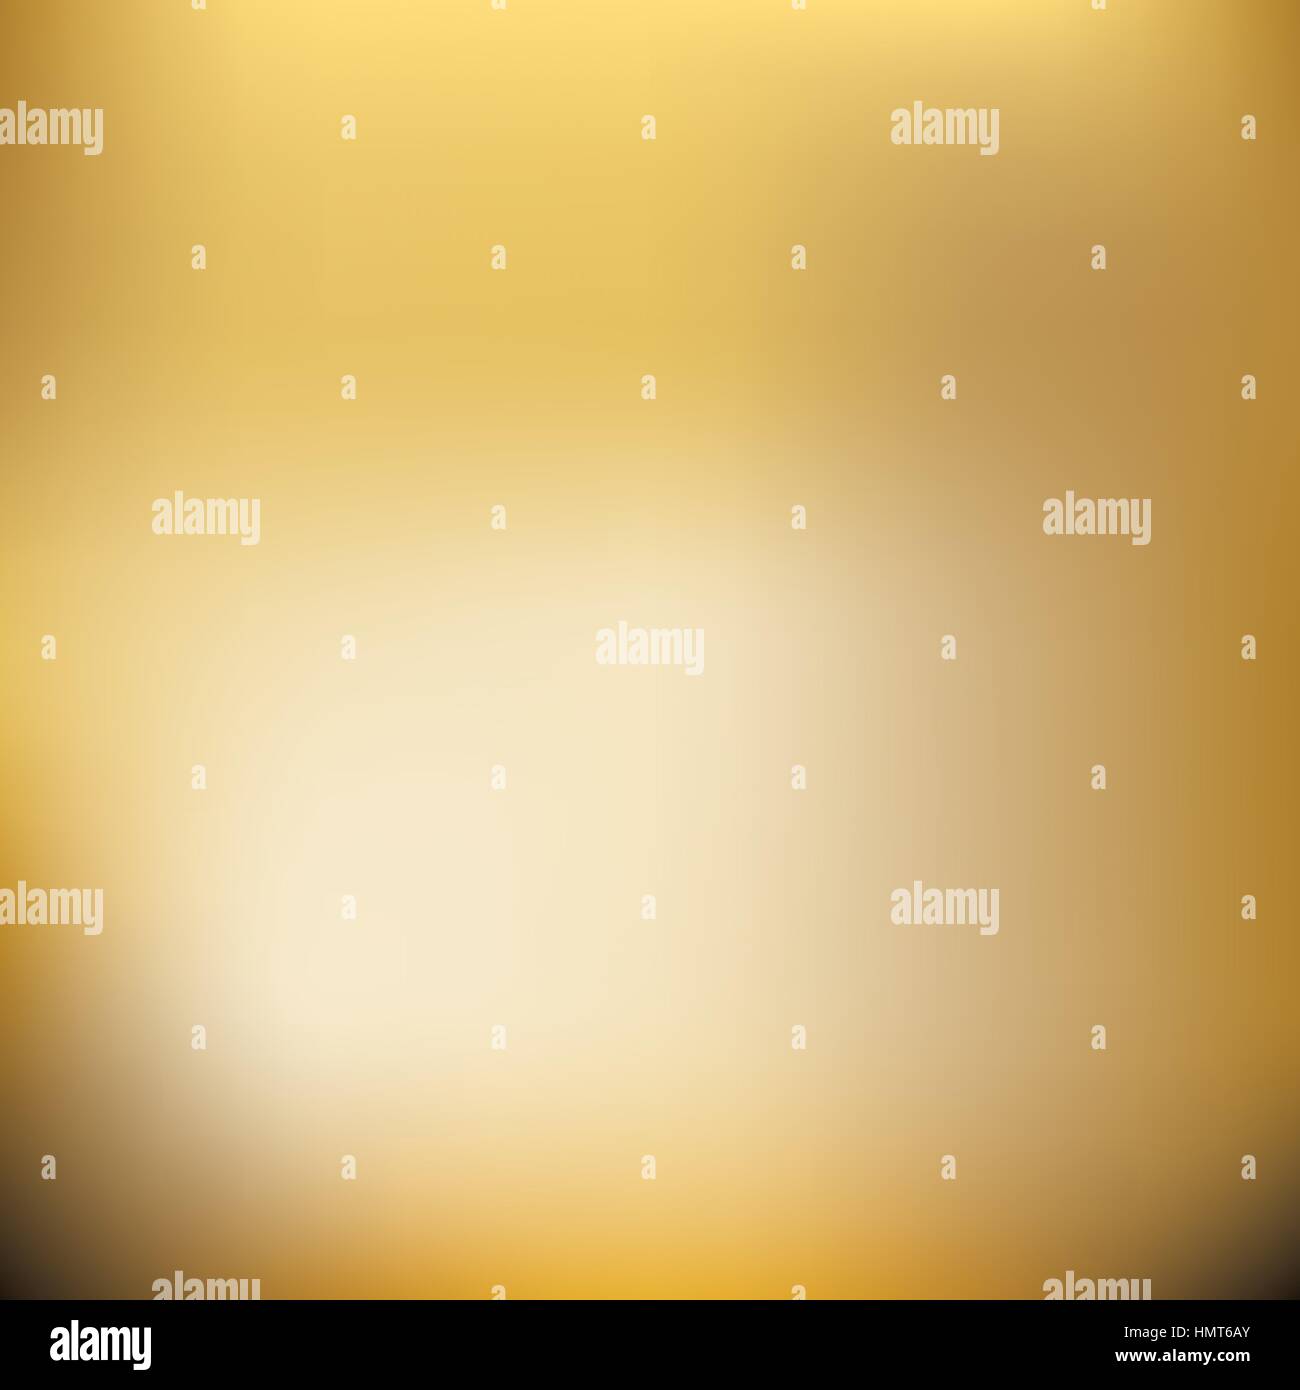 Farbverlauf Gold. Verschwommene goldene Farben mesh Hintergrund. Glatte Mischung Banner Vorlage. Leicht bearbeitbare weiche farbige eps8 Vektor-Illustration ohne Transport Stock Vektor